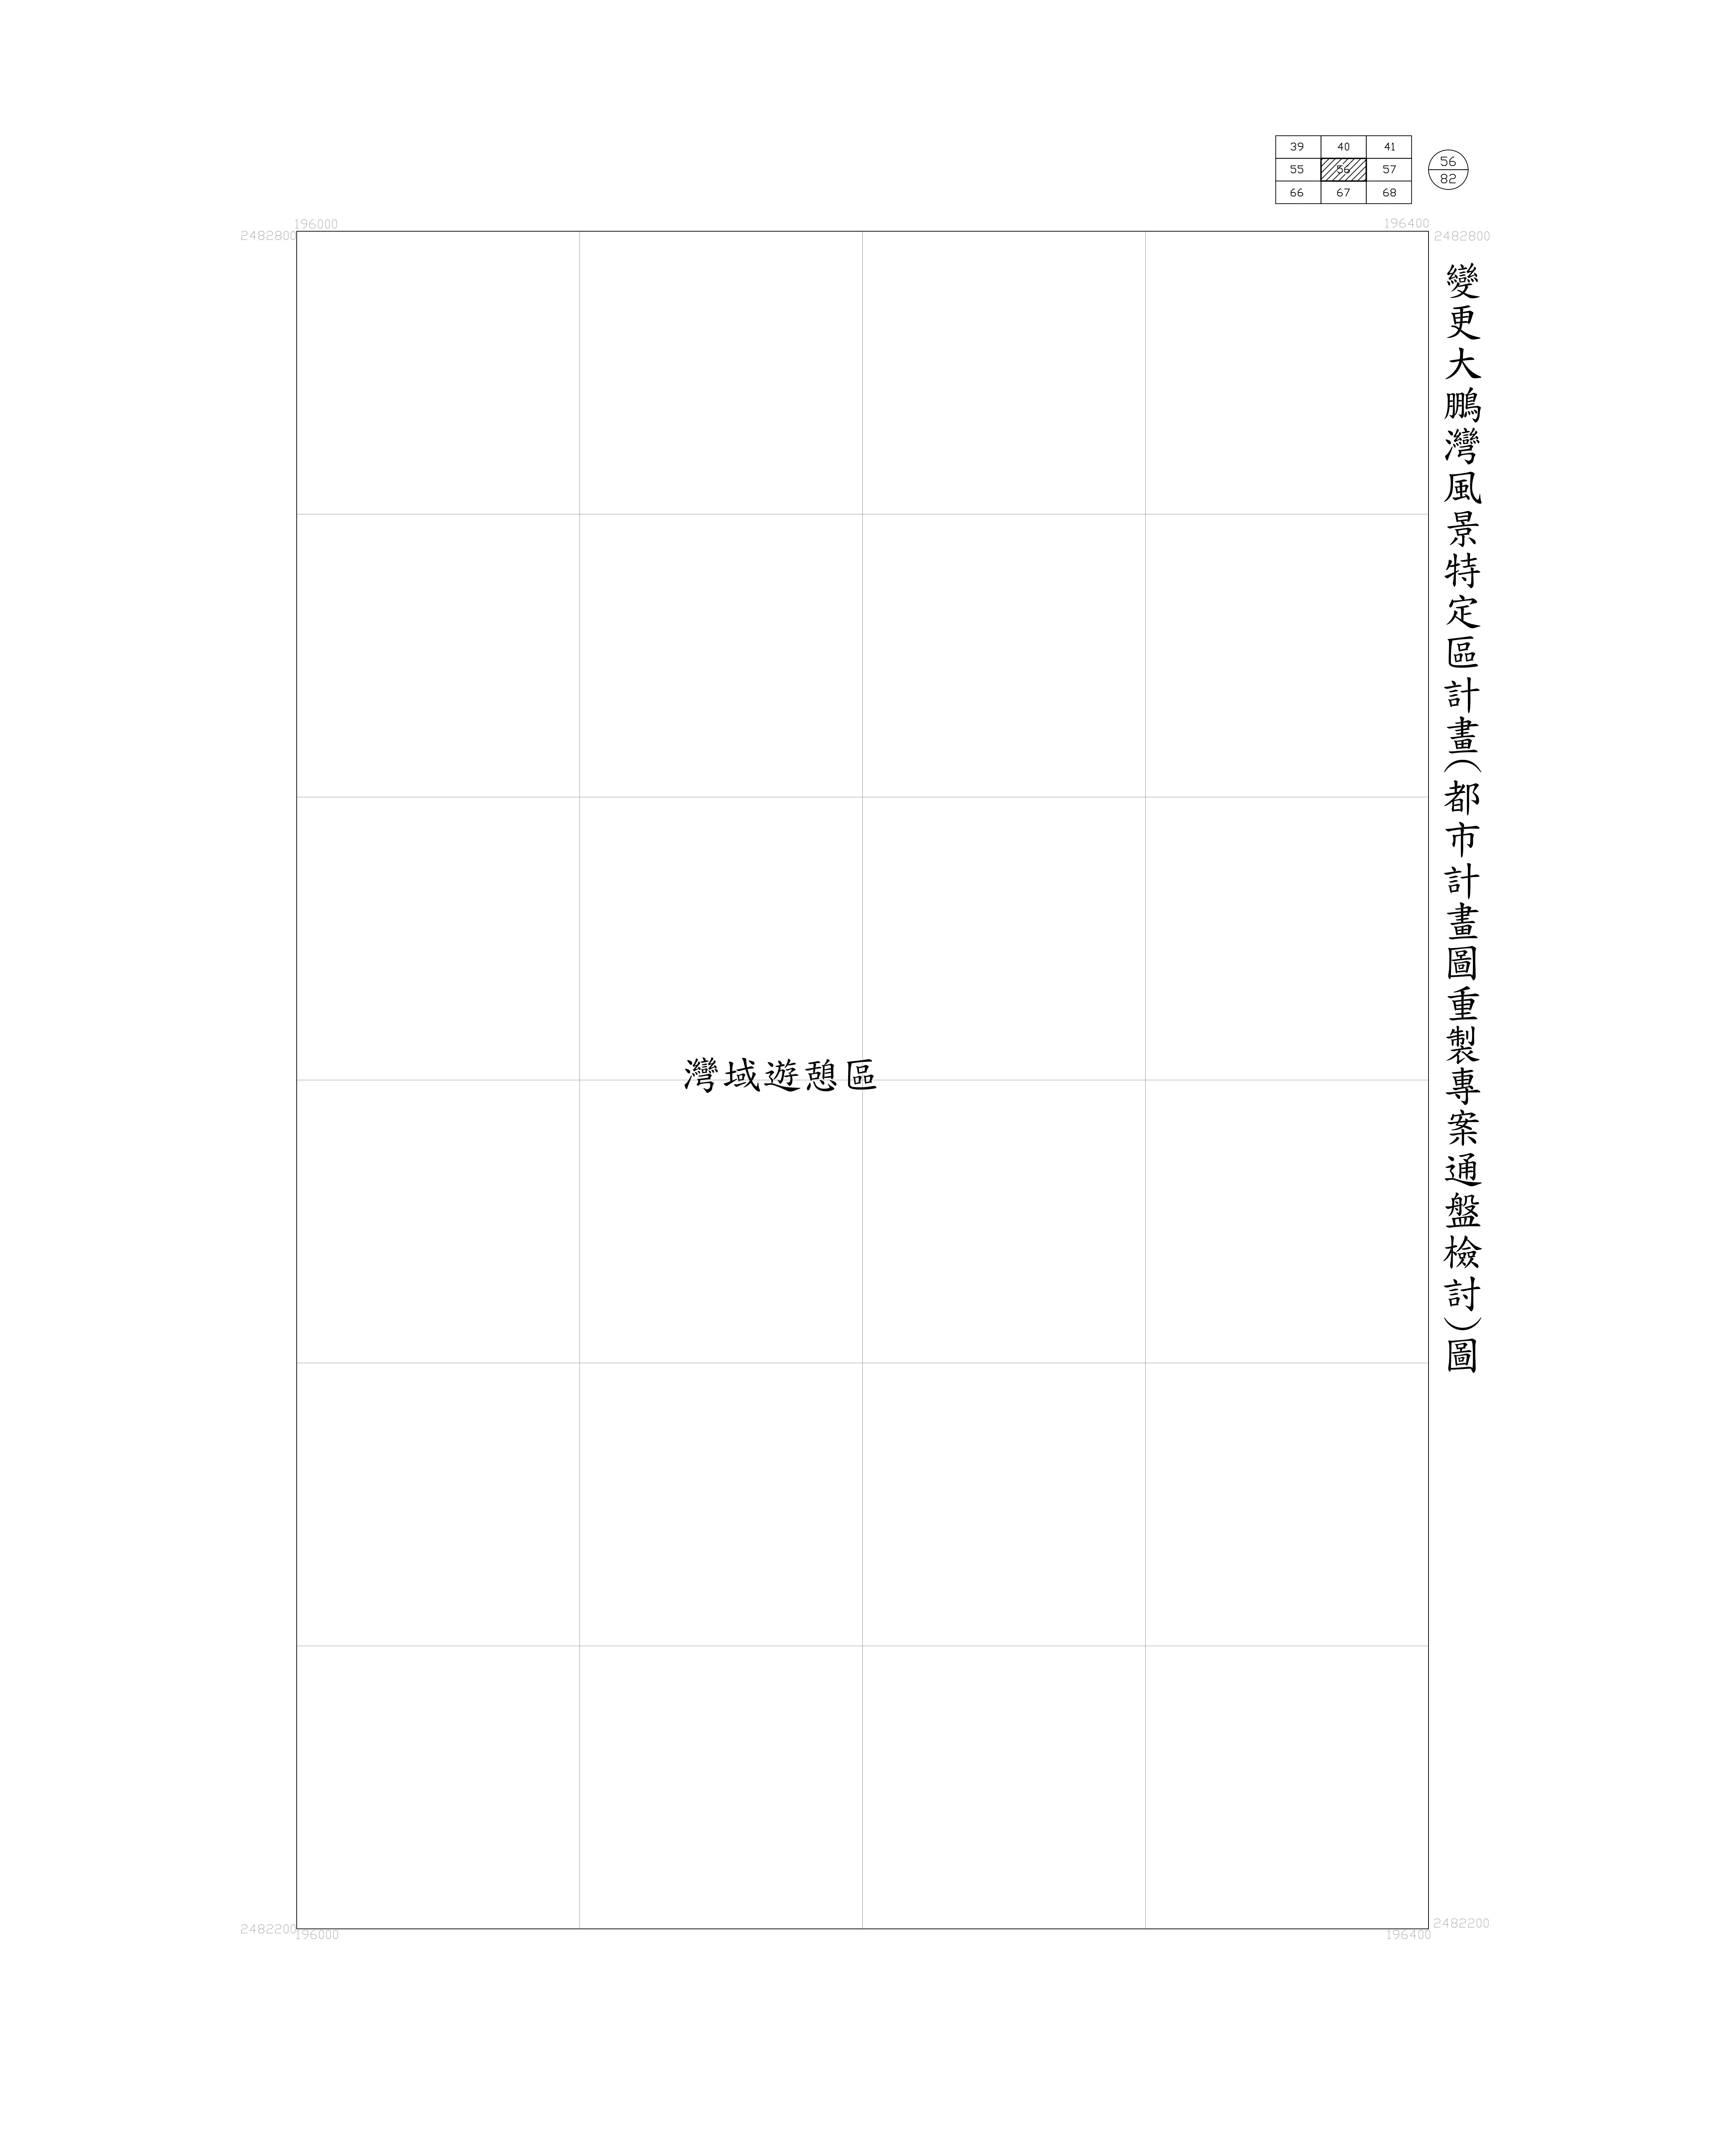 大鵬灣-都市計畫圖重製專案通盤檢討圖(核定)56-1